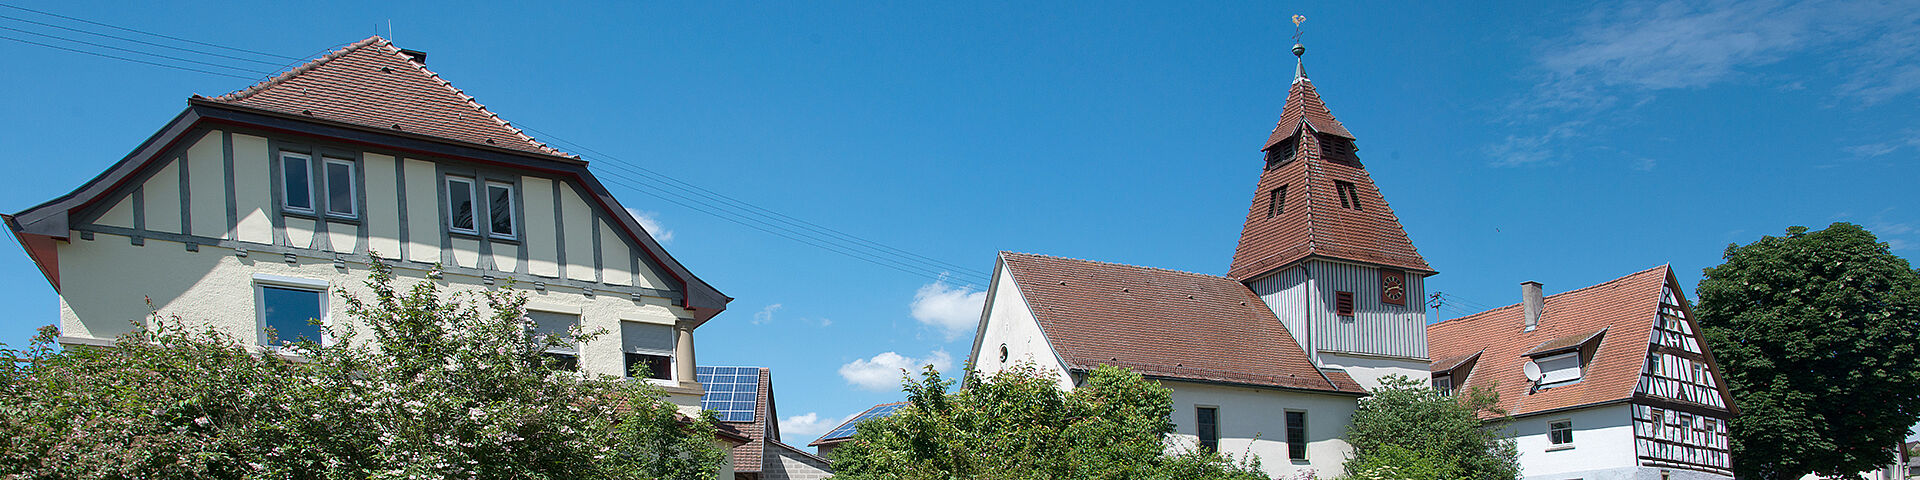 Fachwerkhäuser und eine kleine Kirche in Zweiflingen sind vor blauem Himmel zu sehen.